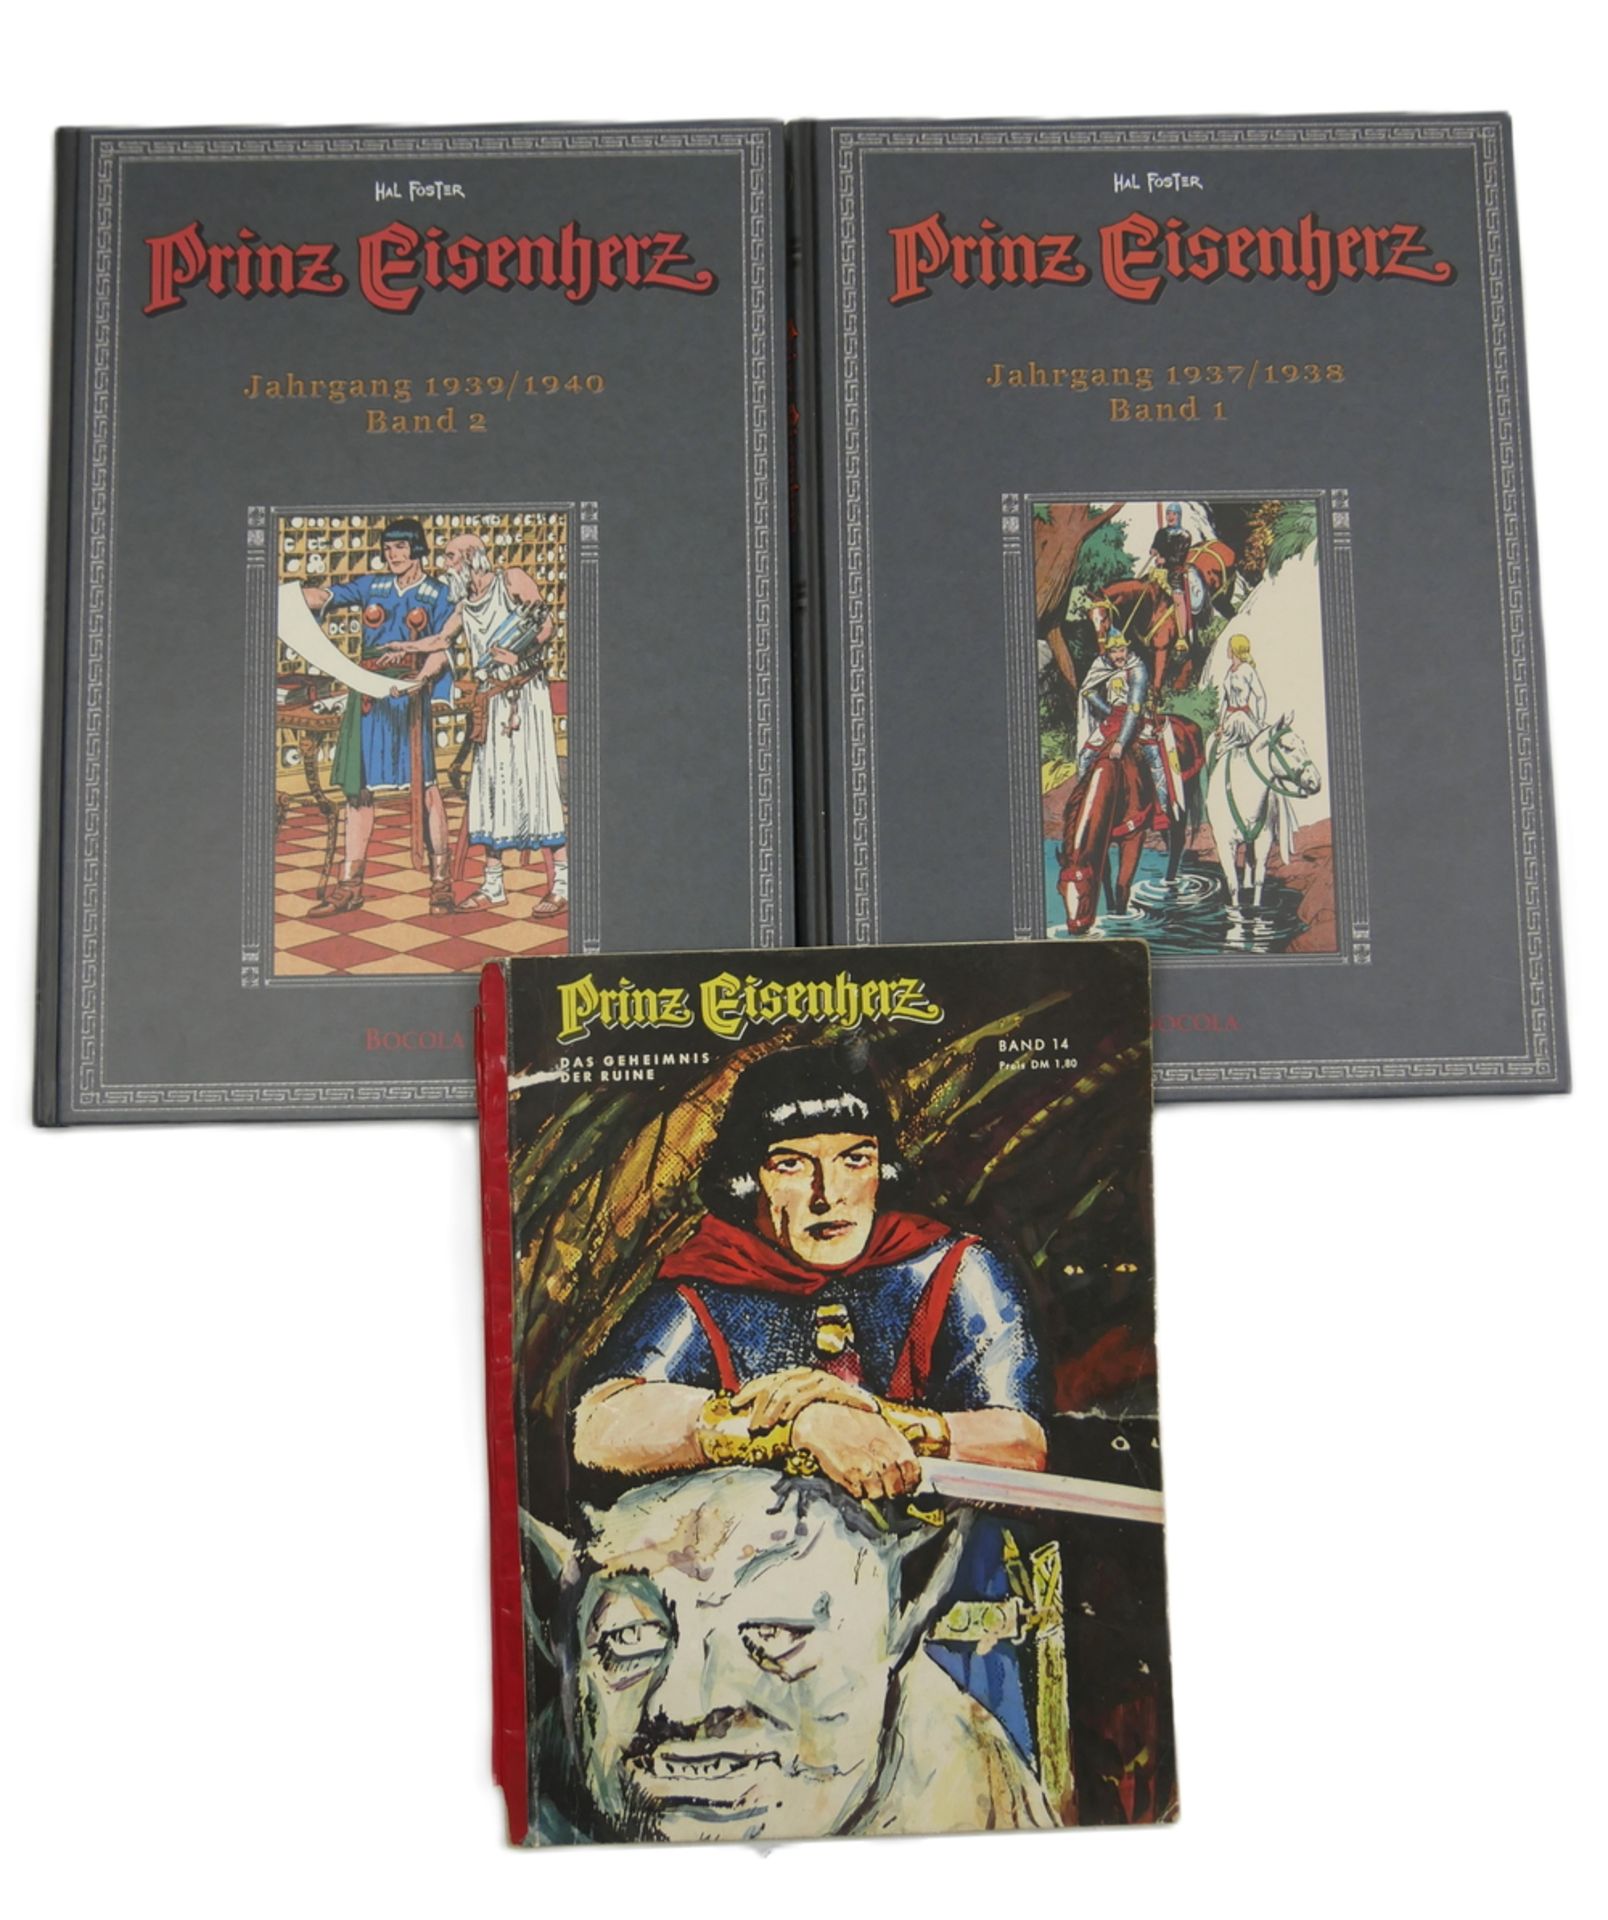 3 Prinz Eisenherz Hefte, 2x gebunden, Jahrgang 1937/1938, Band 1, Jahrgang 1939/1940 Band 2 und 1x